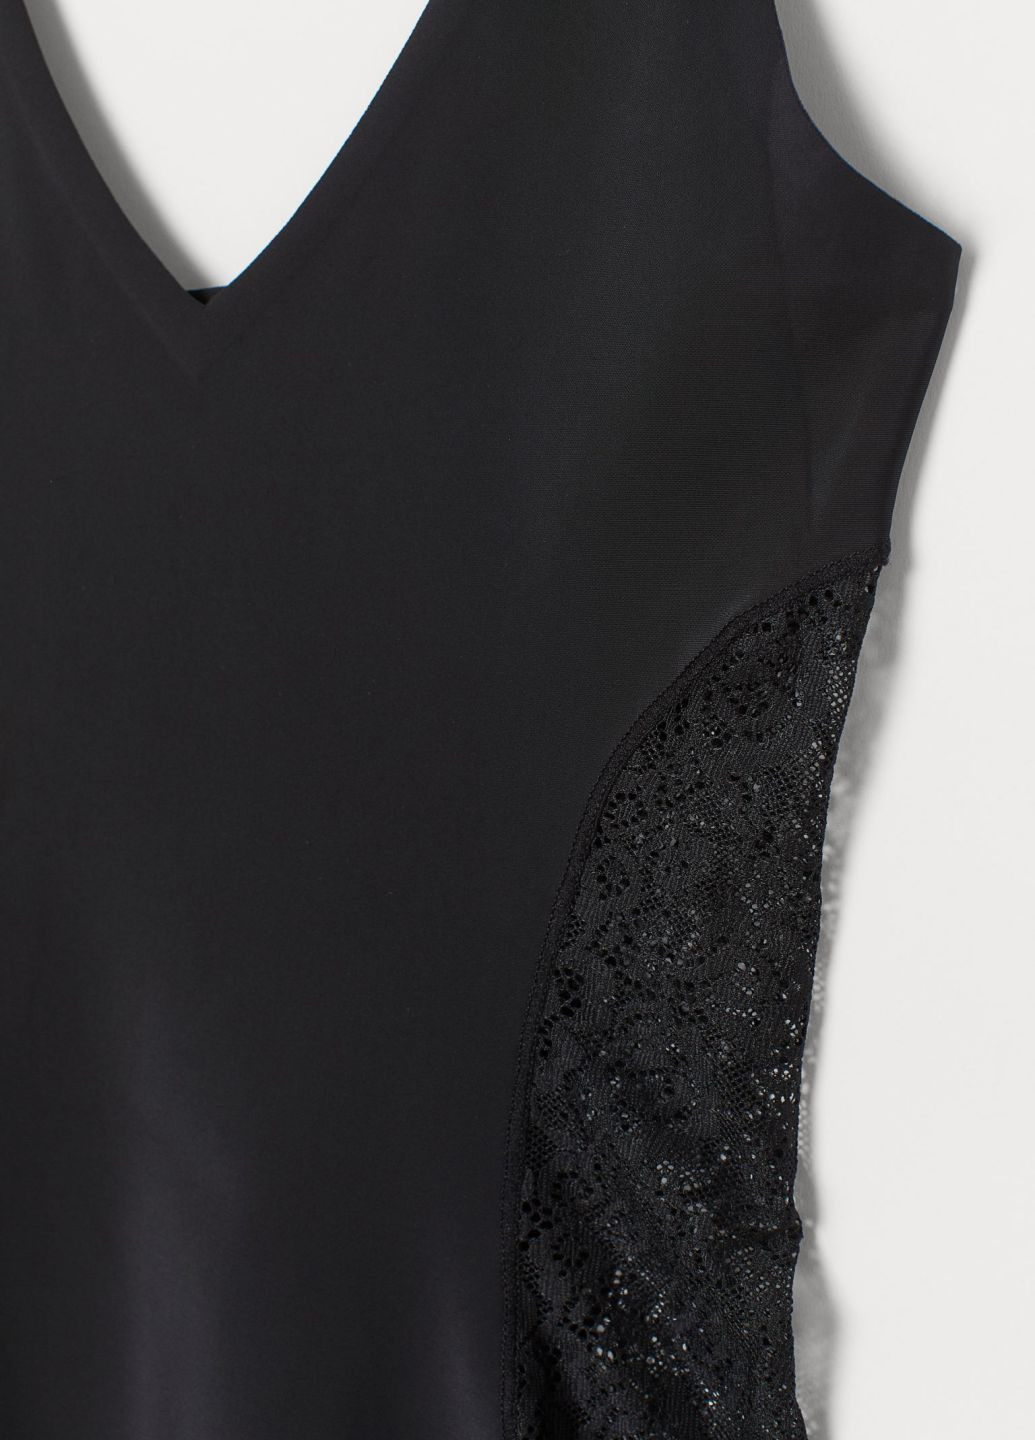 Комбинация (платье) H&M однотонная чёрная домашняя